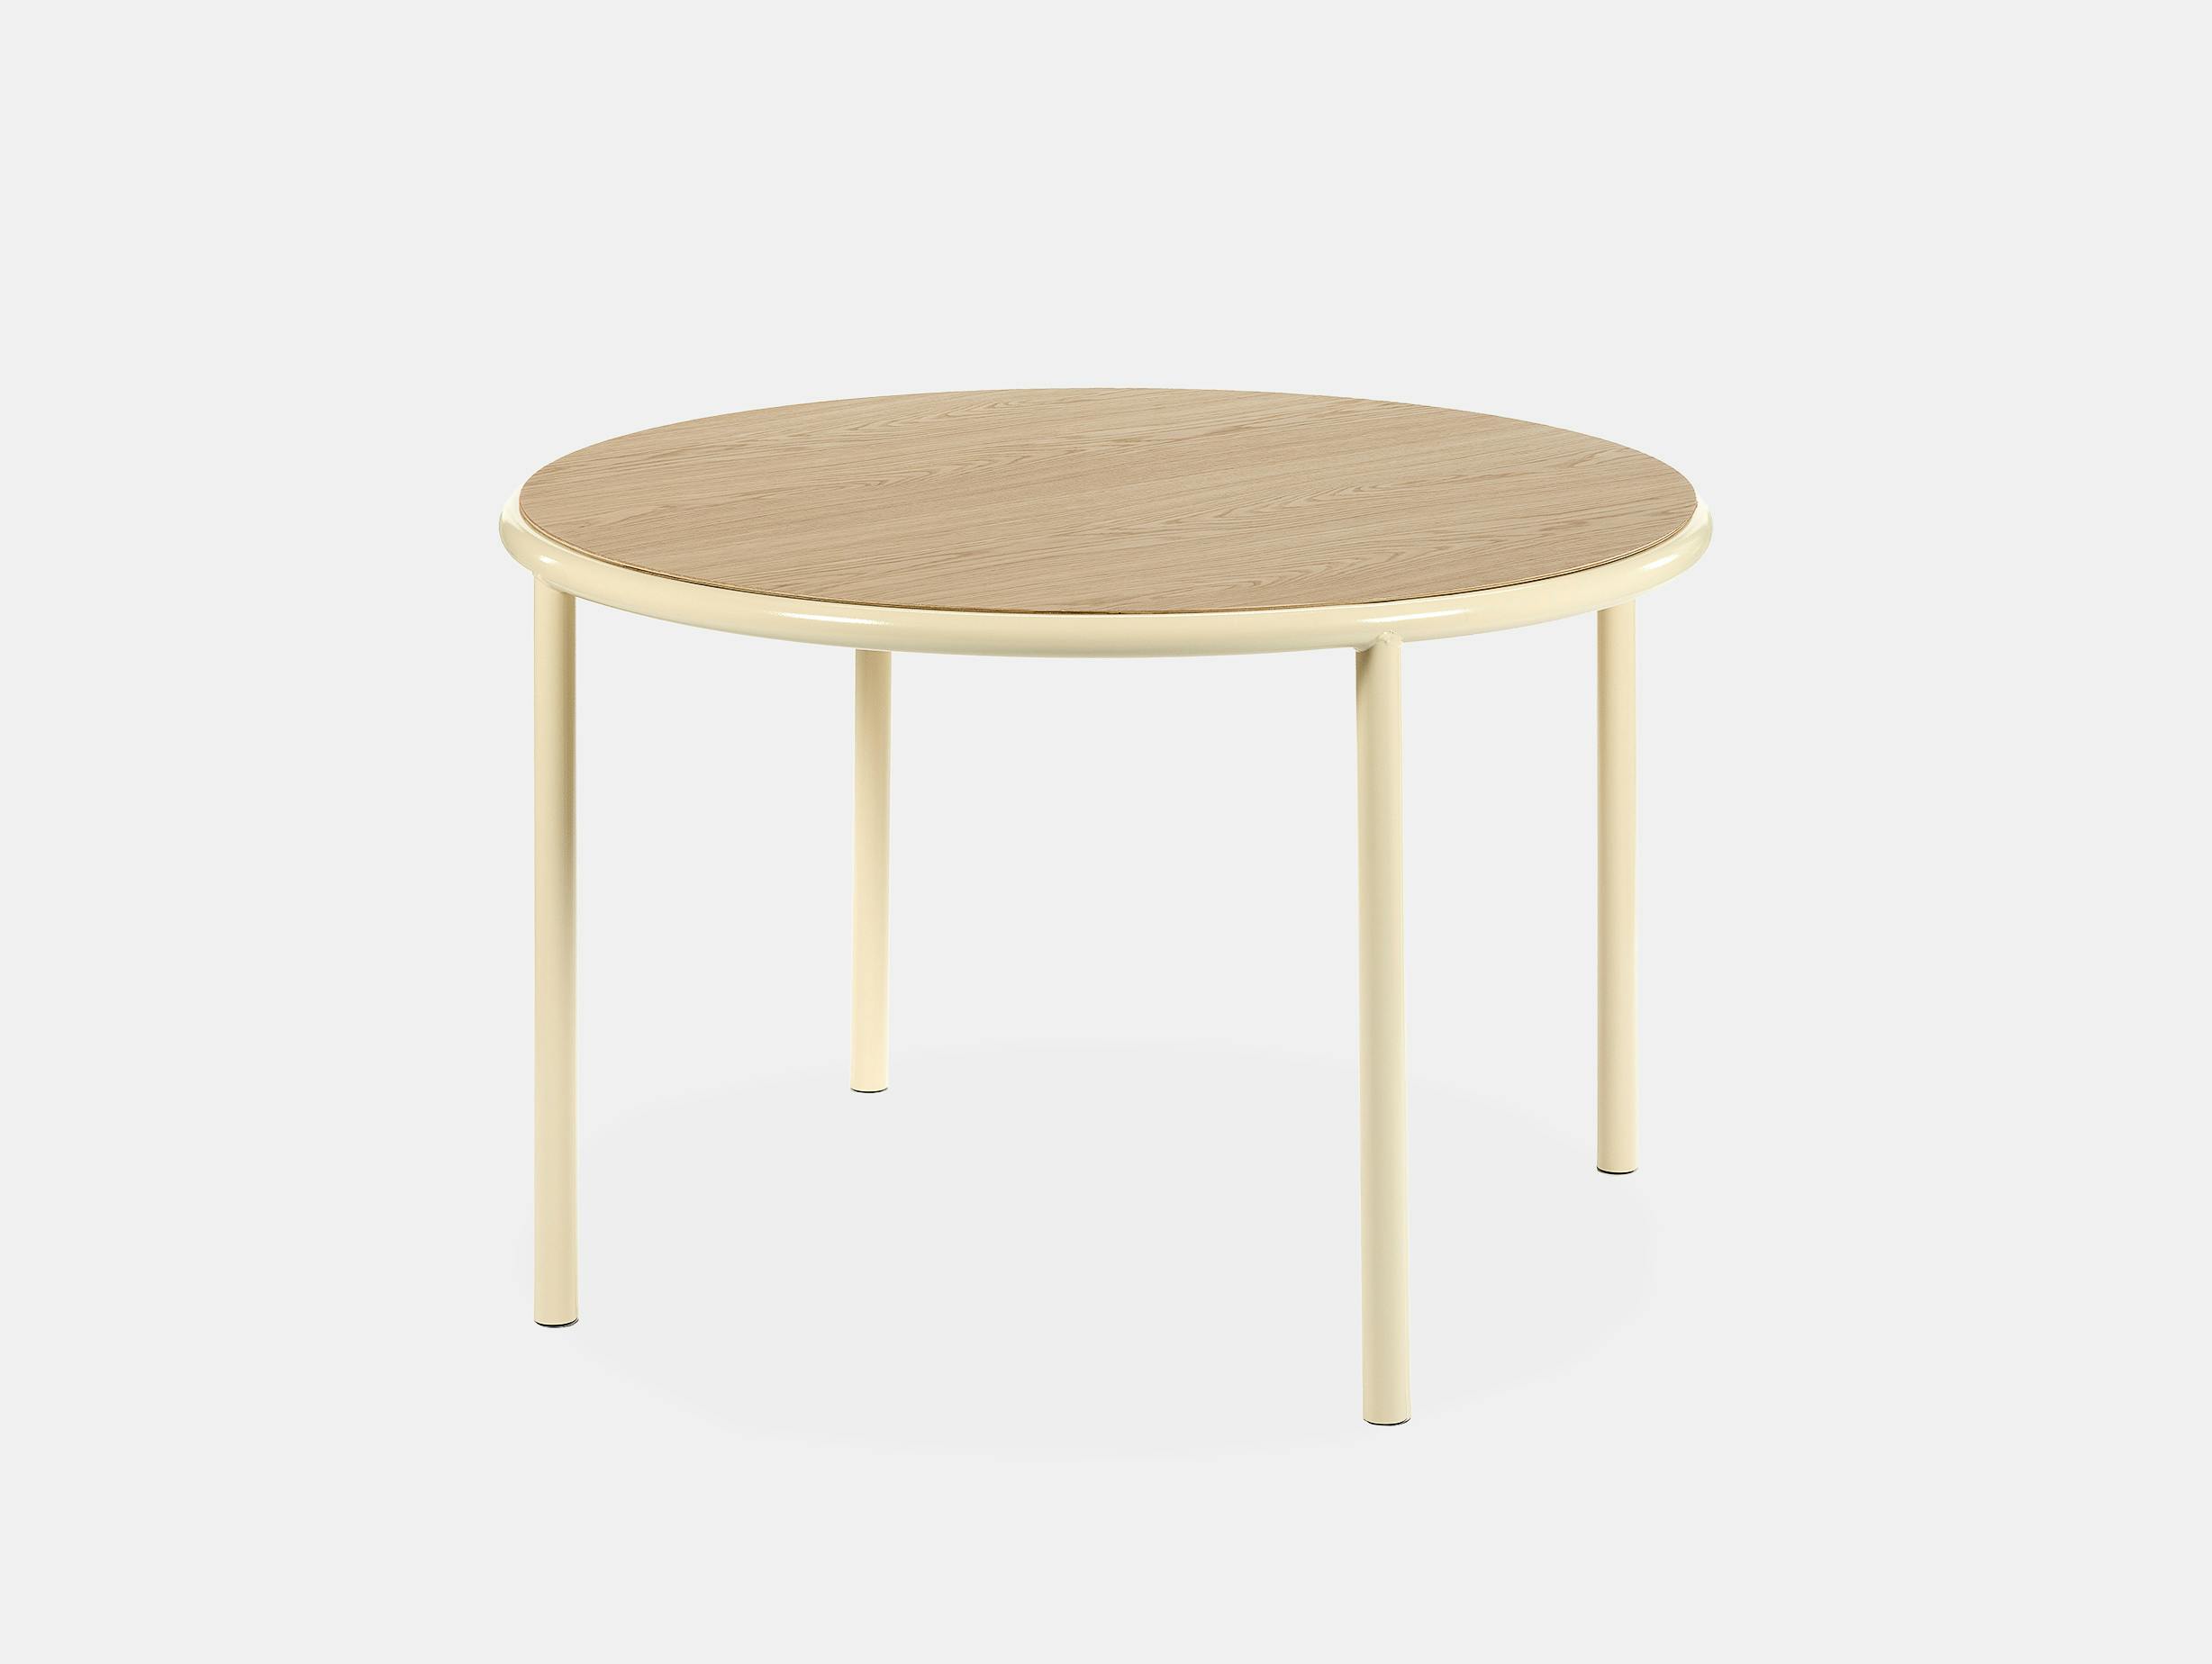 Muller van severen wooden table small round ivory oak